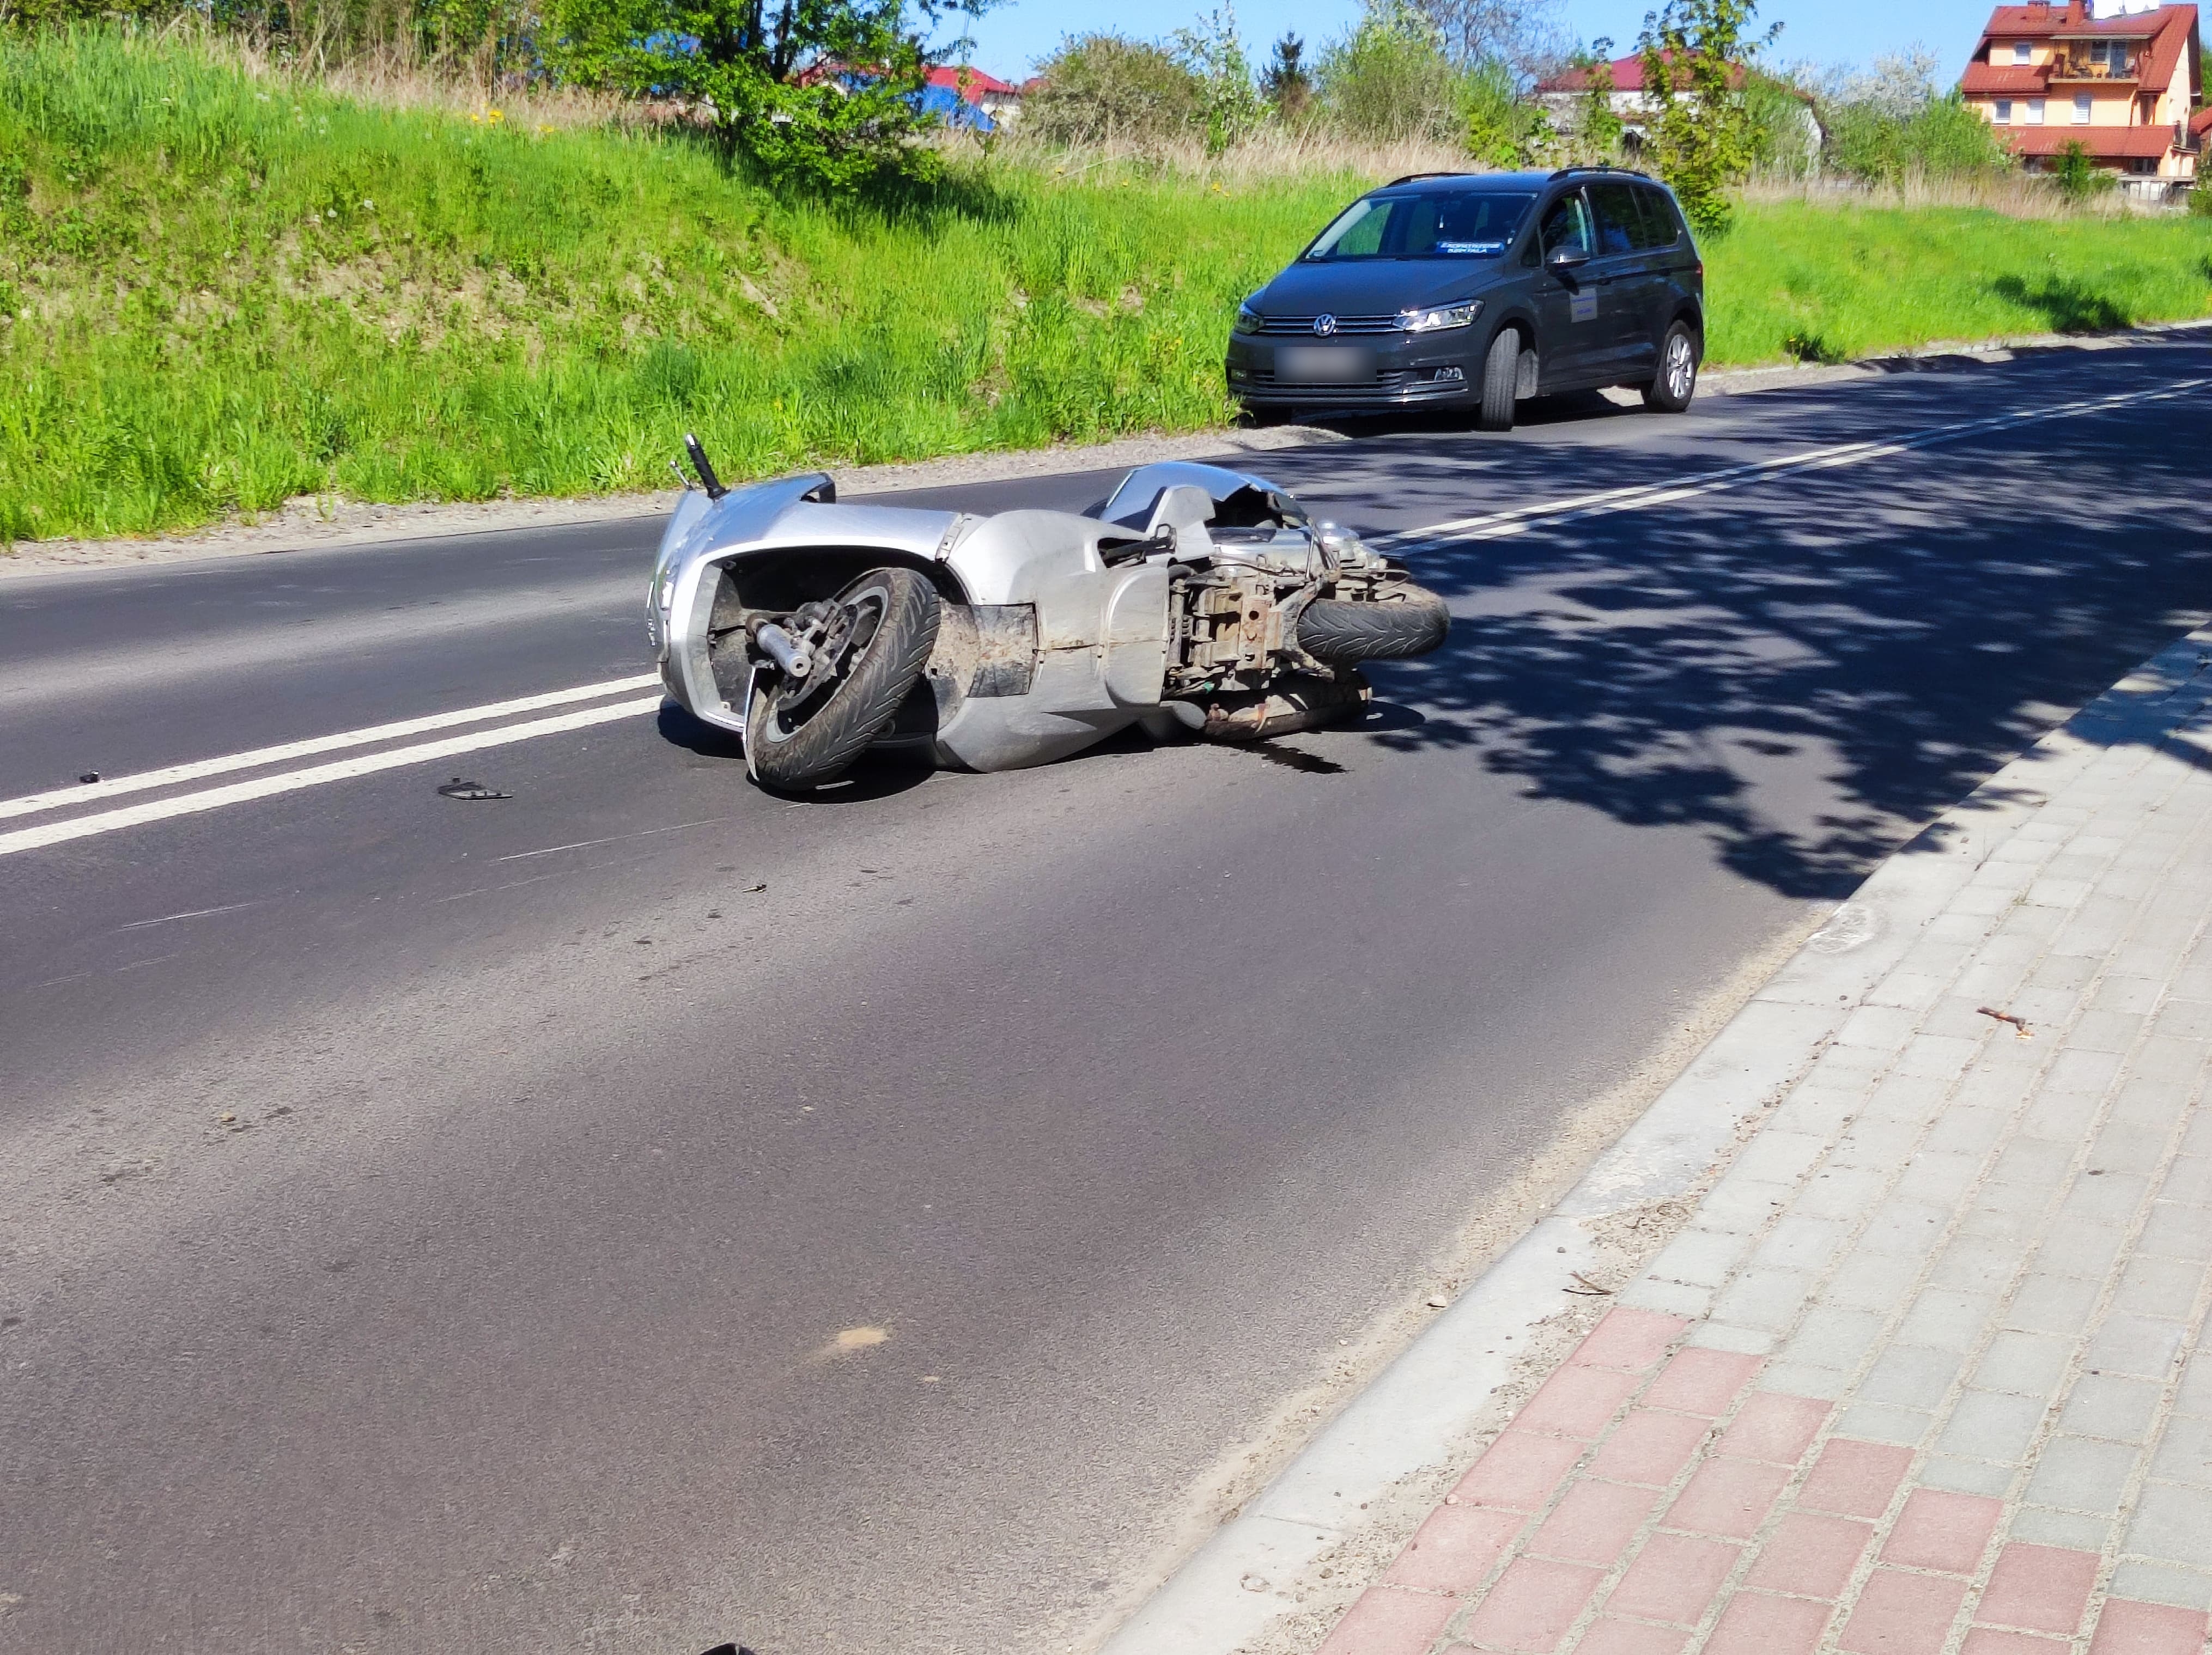 Zderzenie motocykla z pojazdem osobowym w Lublinie. Jedna osoba poszkodowana, ulica zablokowana (zdjęcia)